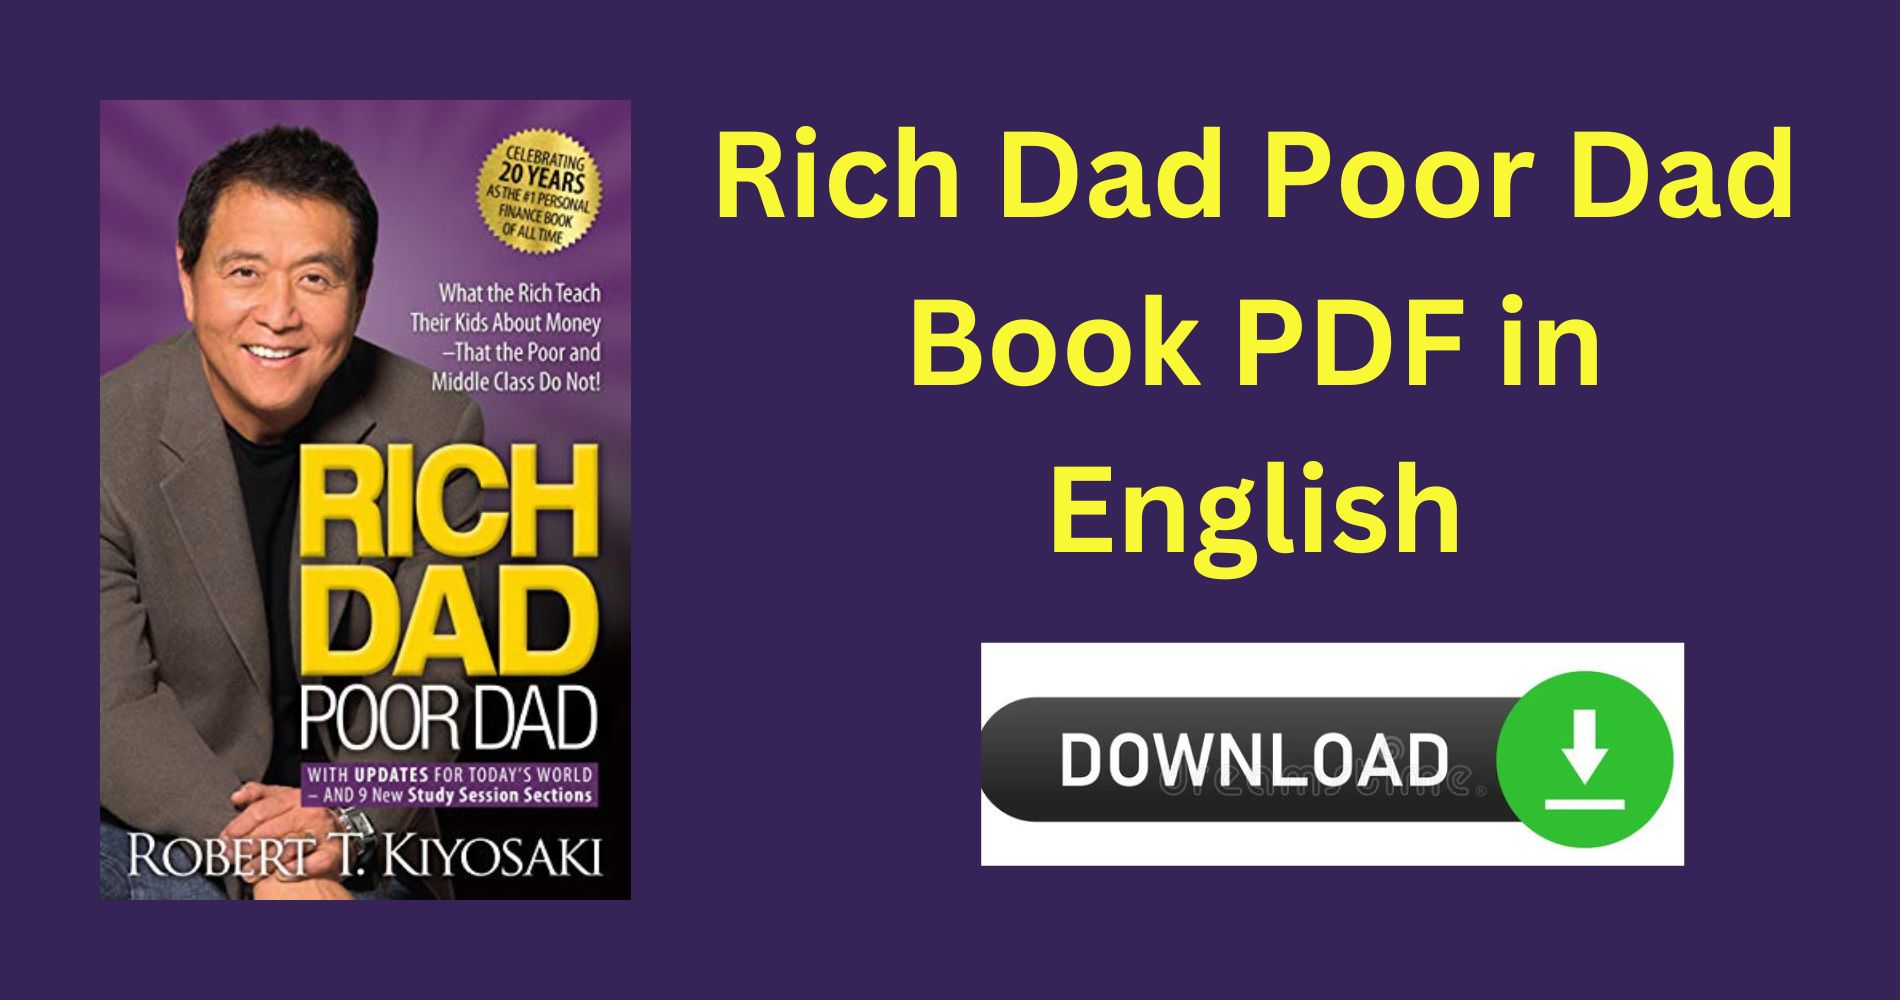 Rich Dad Poor Dad Book PDF in English